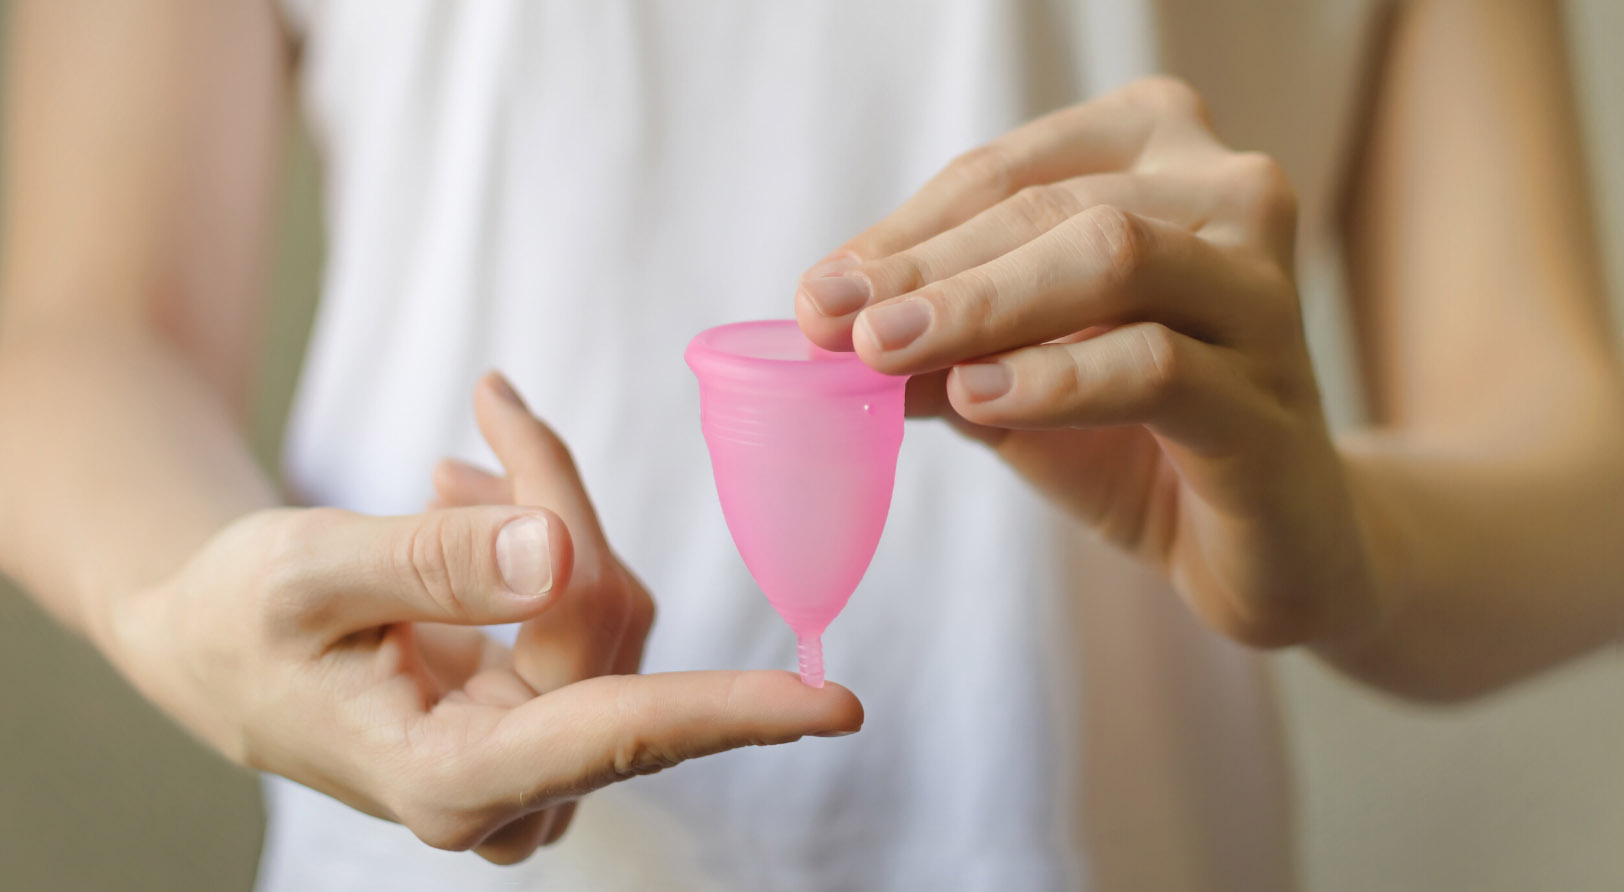 Un estudio acaba de comprobar que la copa menstrual es tan confiable como el tampón